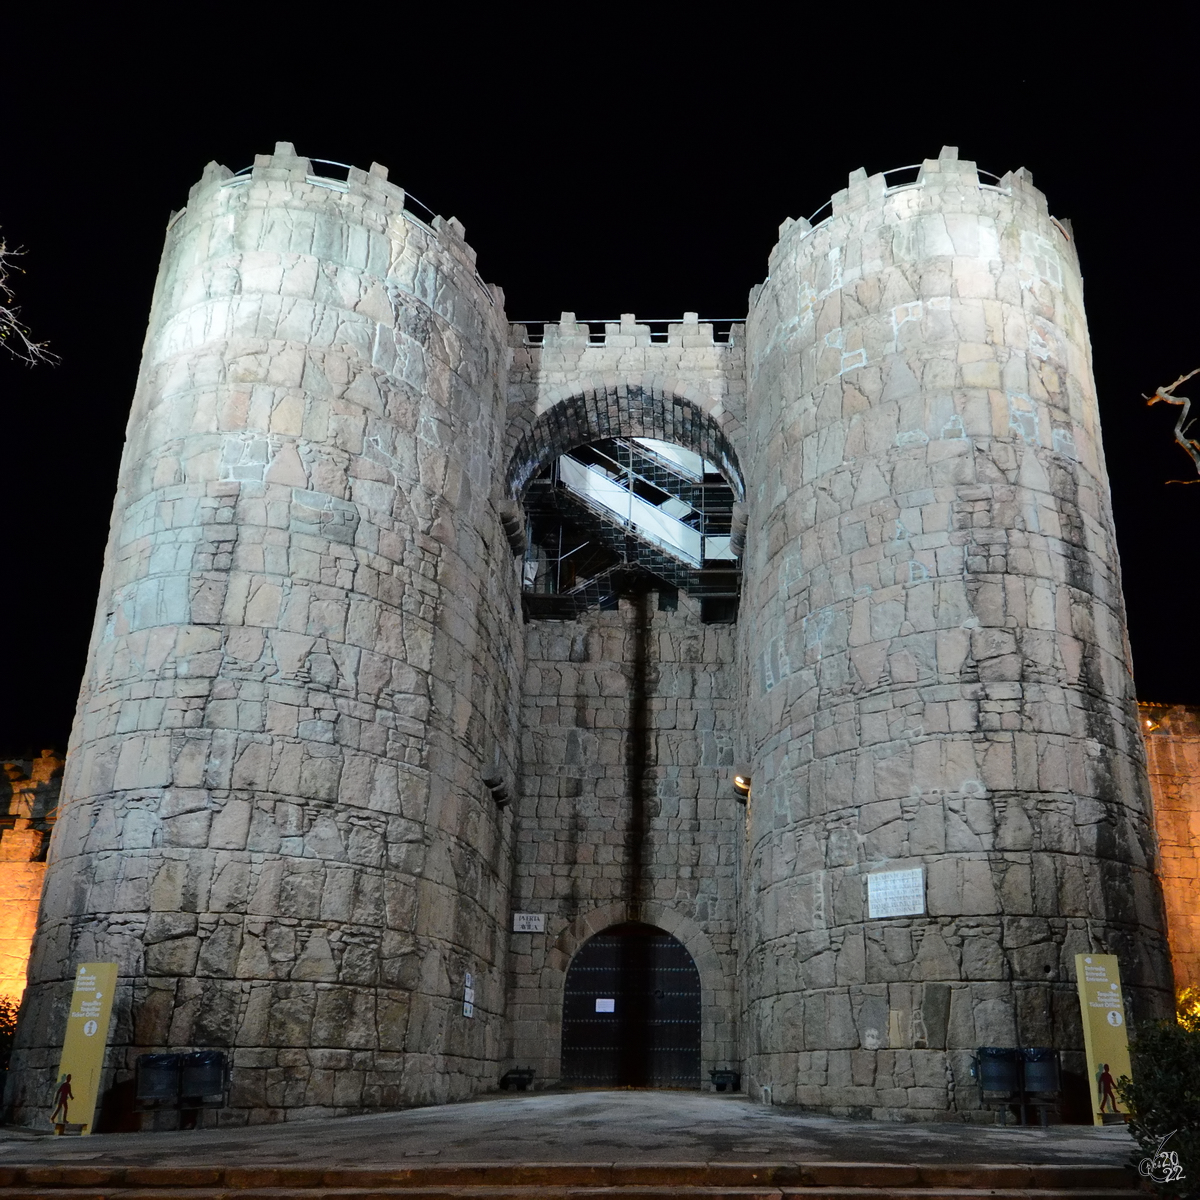 Ein Turmbau an den Auenmauern des Poble Espanyol (Spanisches Dorf), einem 1929 anlsslich der Weltausstellung errichteten Freilichtmuseum in Barcelona. (Februar 2013)